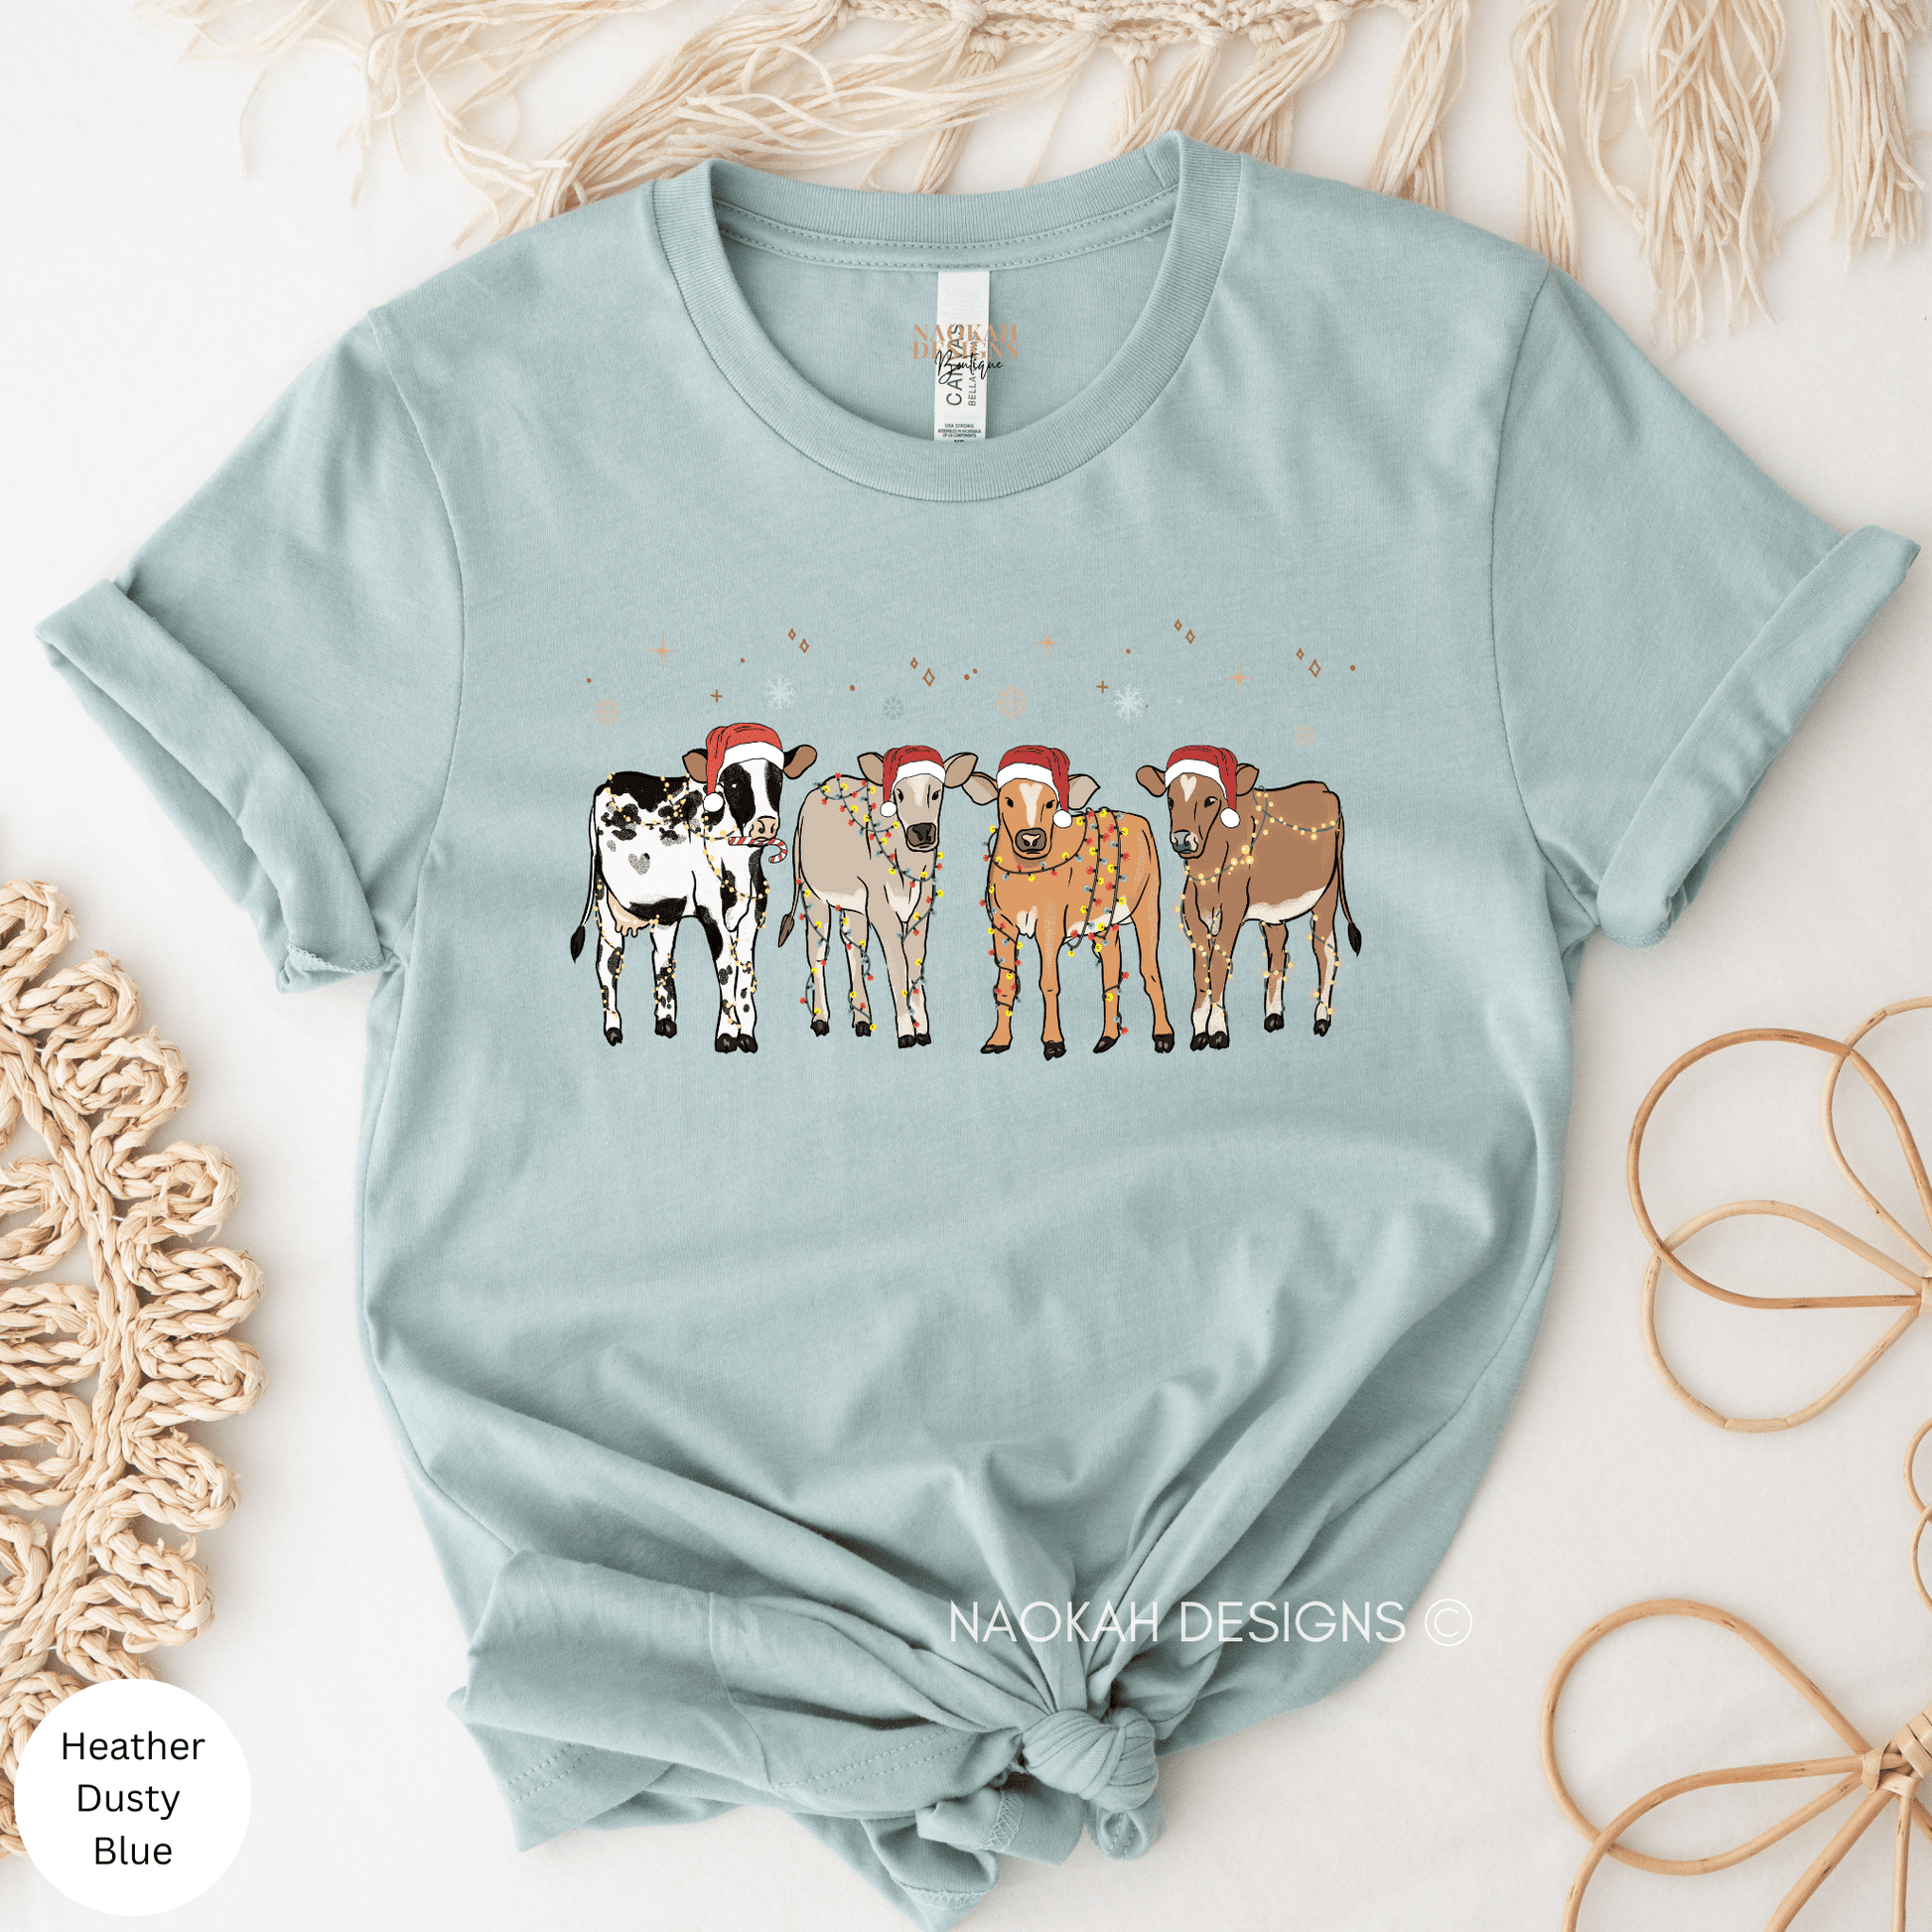 Christmas Cow Shirt, Christmas Animal Shirt, Funny Cow Shirt, Cow Christmas Gift, Cute Christmas Shirt, Farm Christmas Shirt, Highland Cow